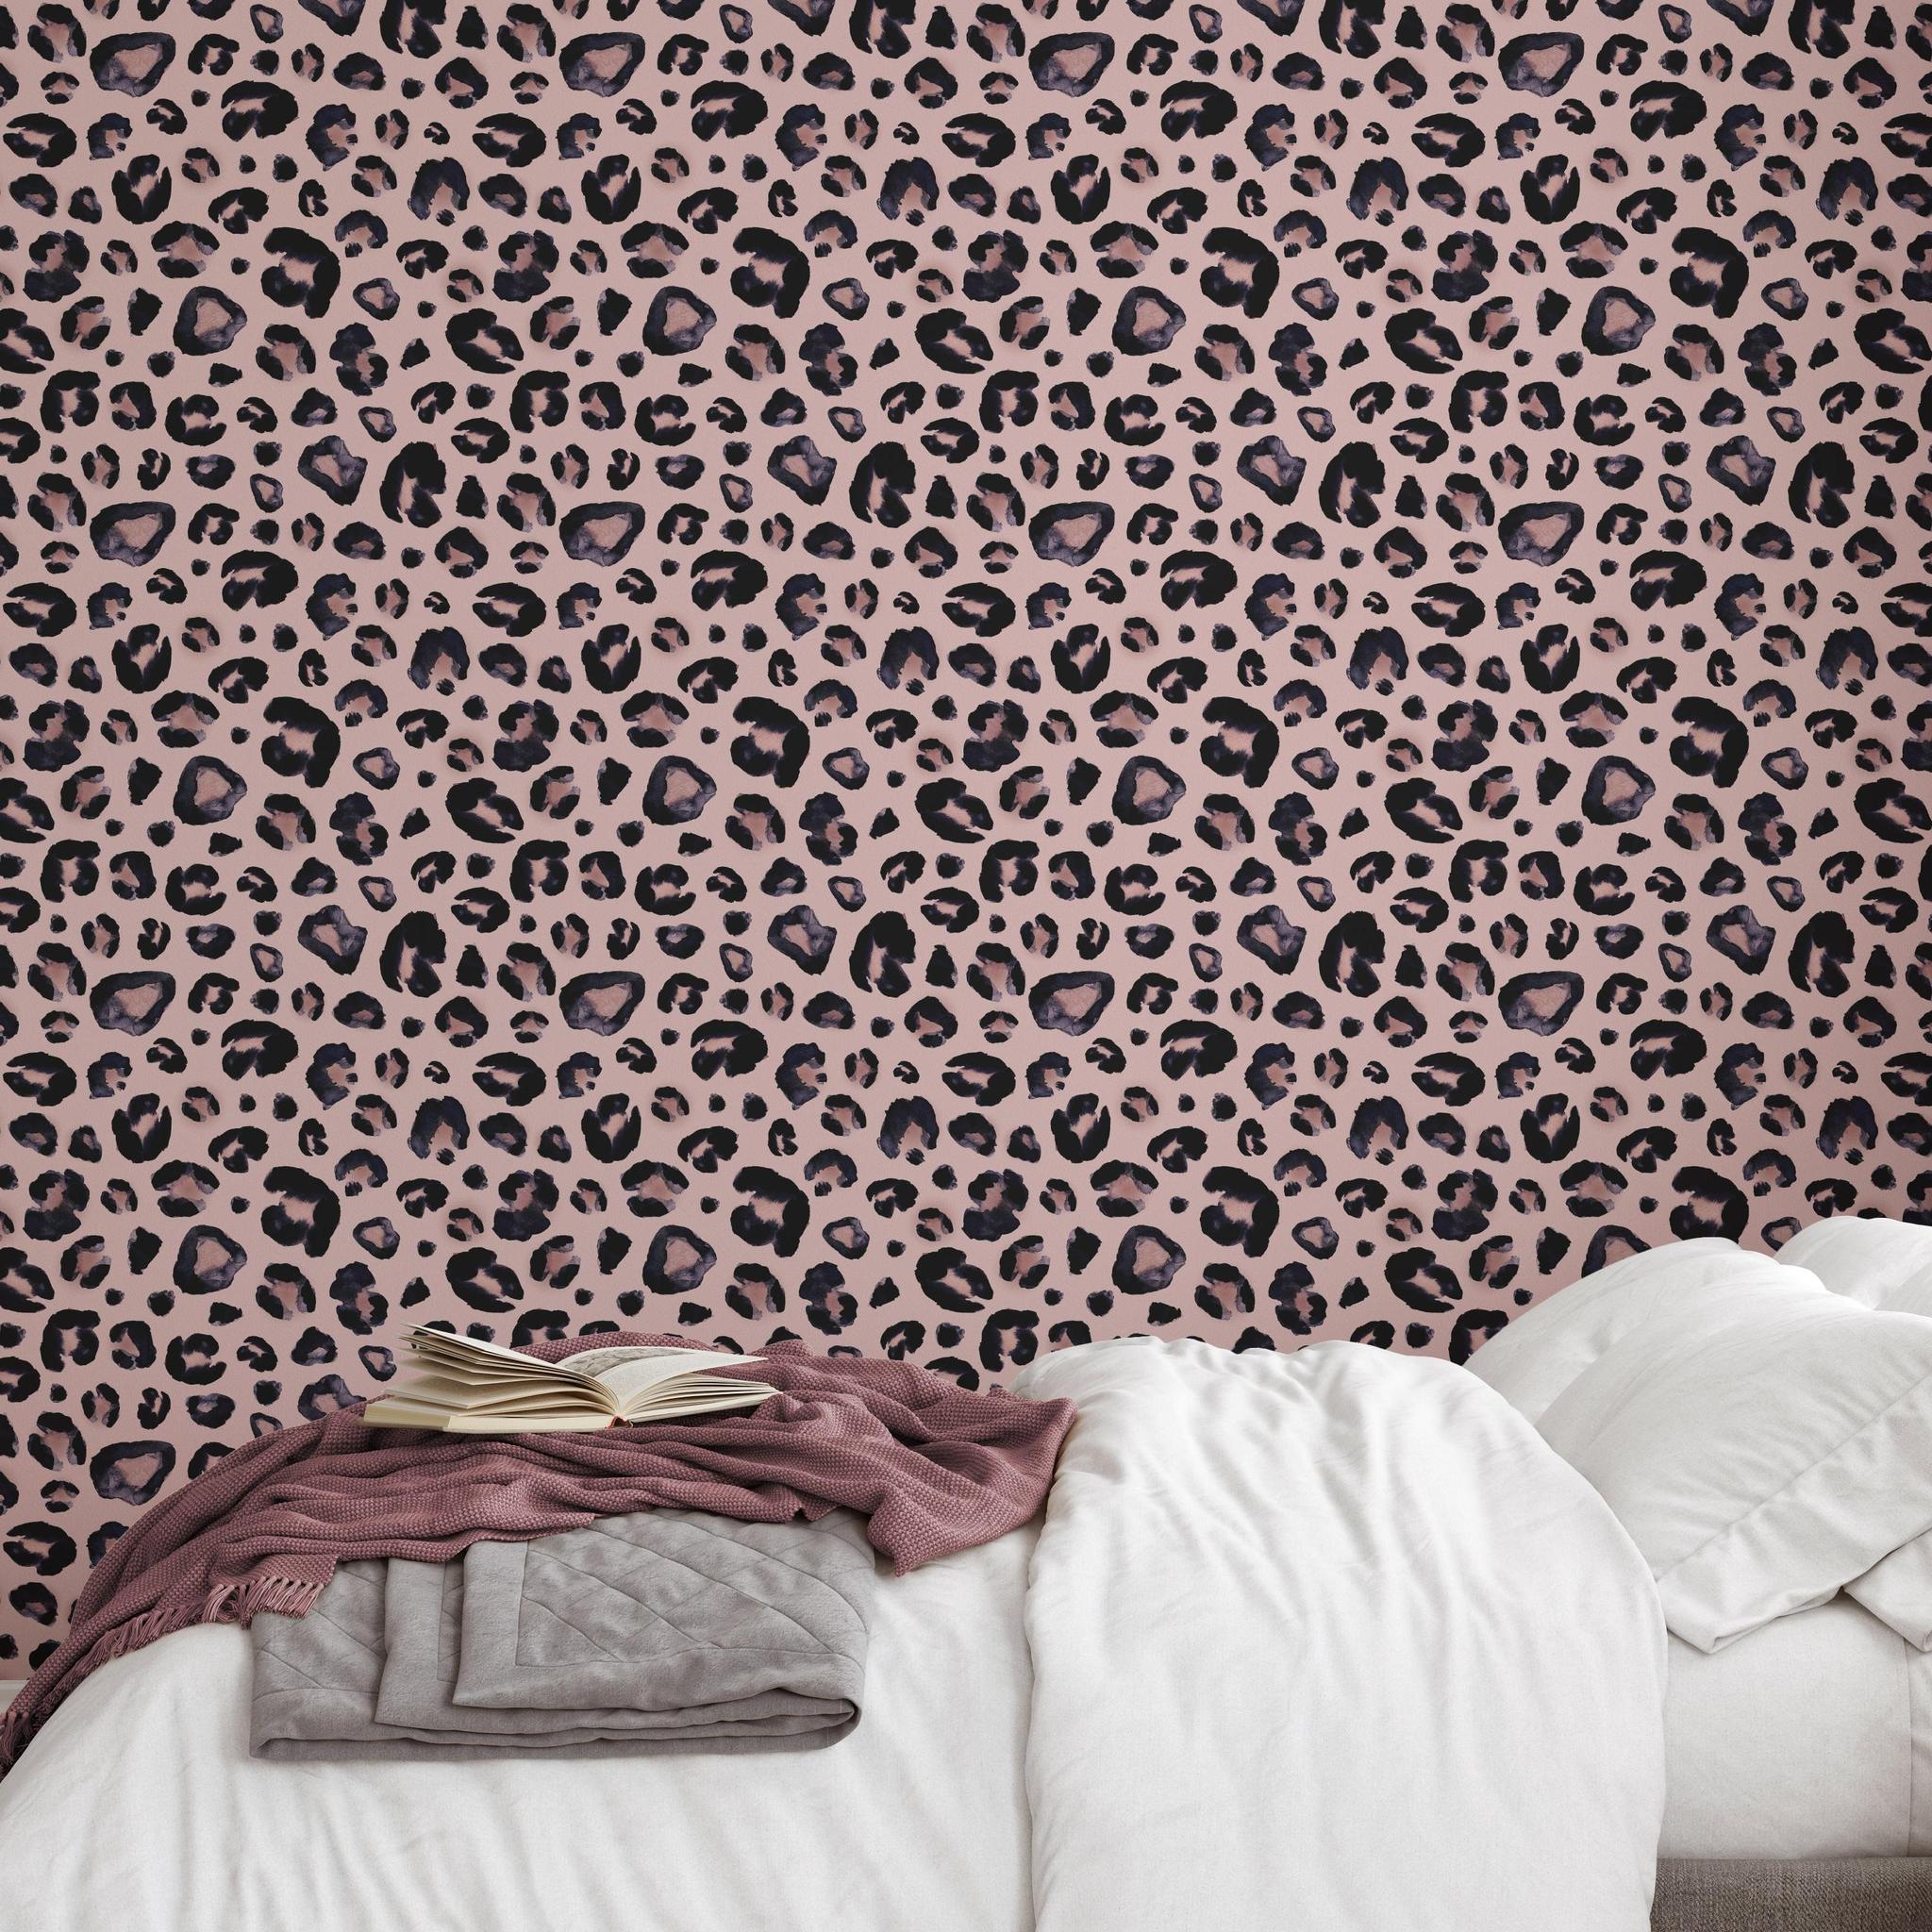 Blush pink leopard print wallpaper  Leopard print wallpaper, Print  wallpaper, Cow print wallpaper